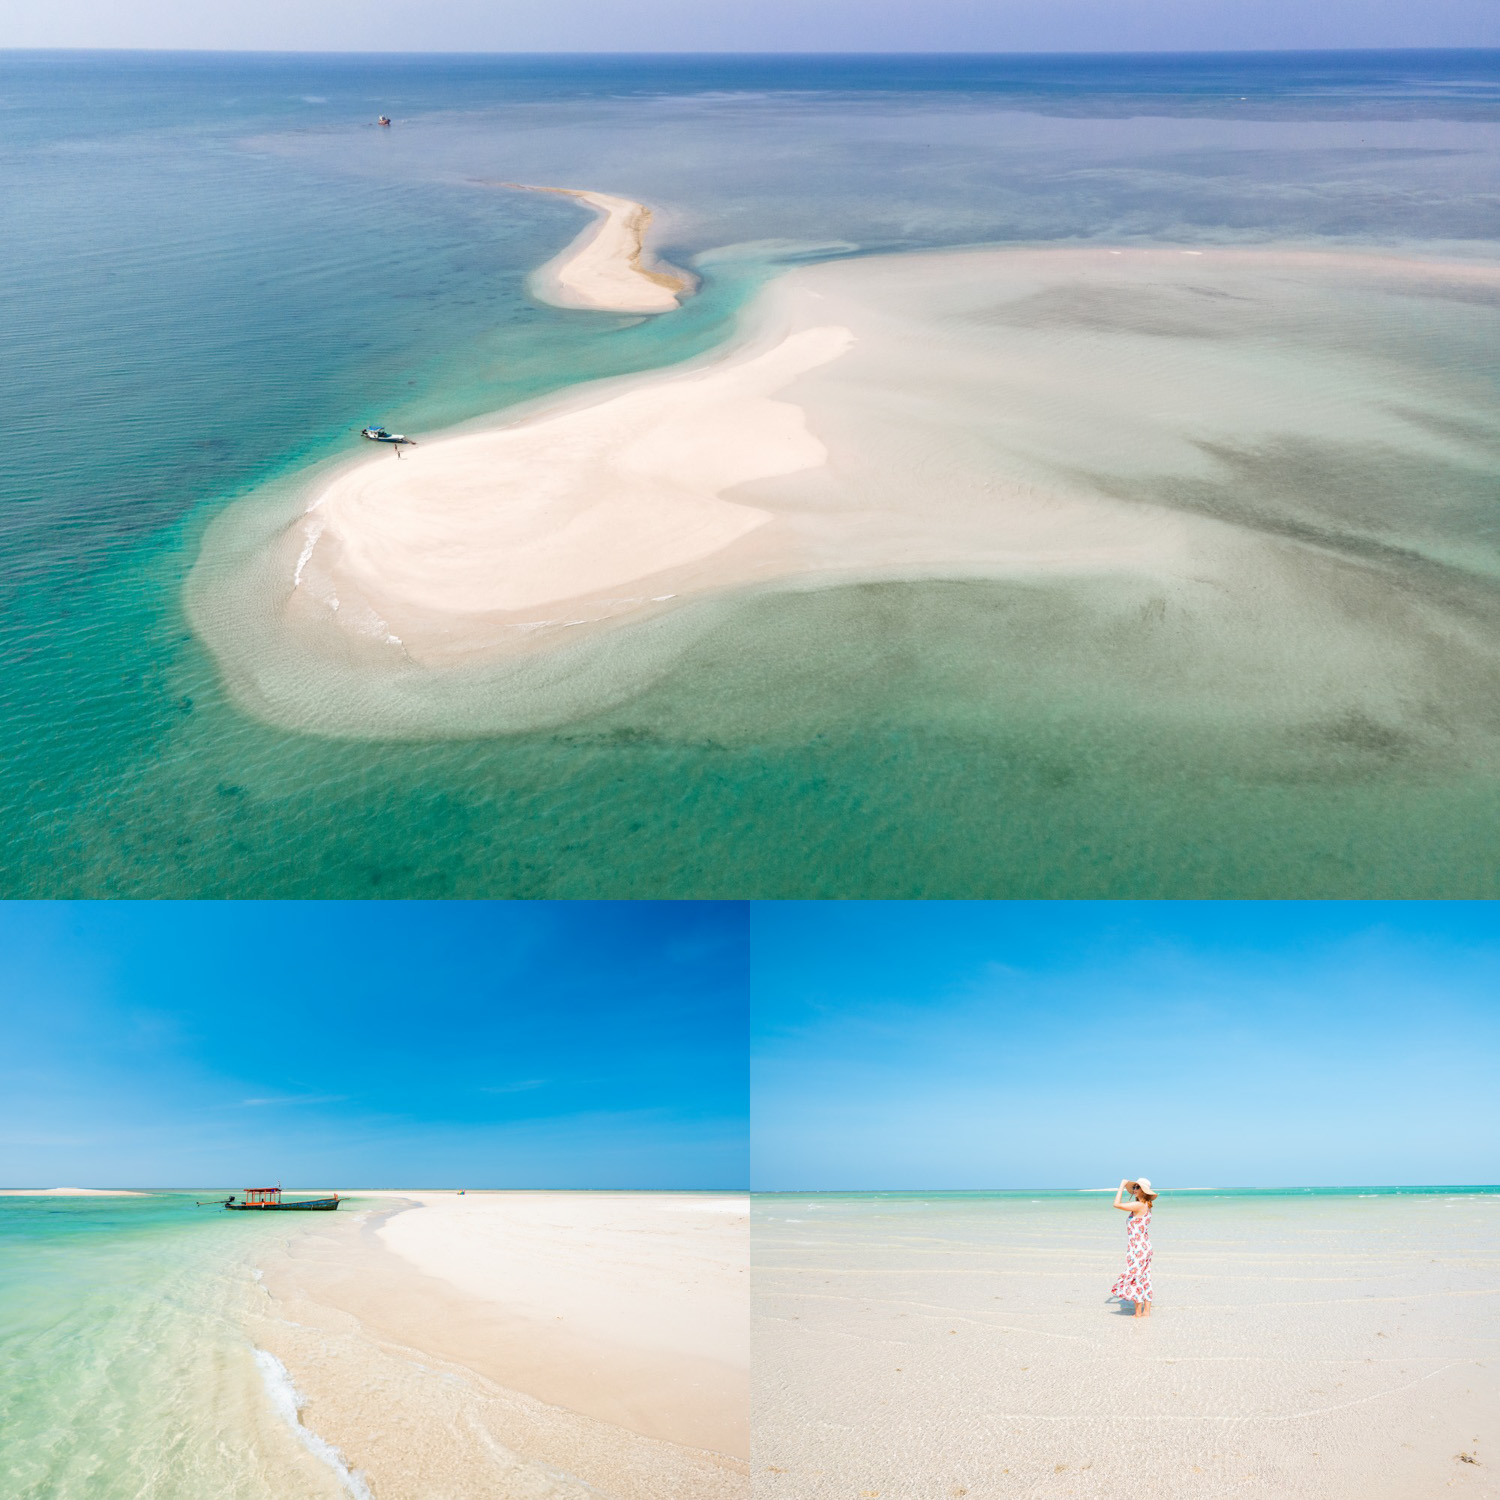 15 ชายหาดเขาหลัก-พังงา ทะเลสวย น้ำใส ทรายขาว อัพเดทใหม่ น่าไปเช็คอิน 2022